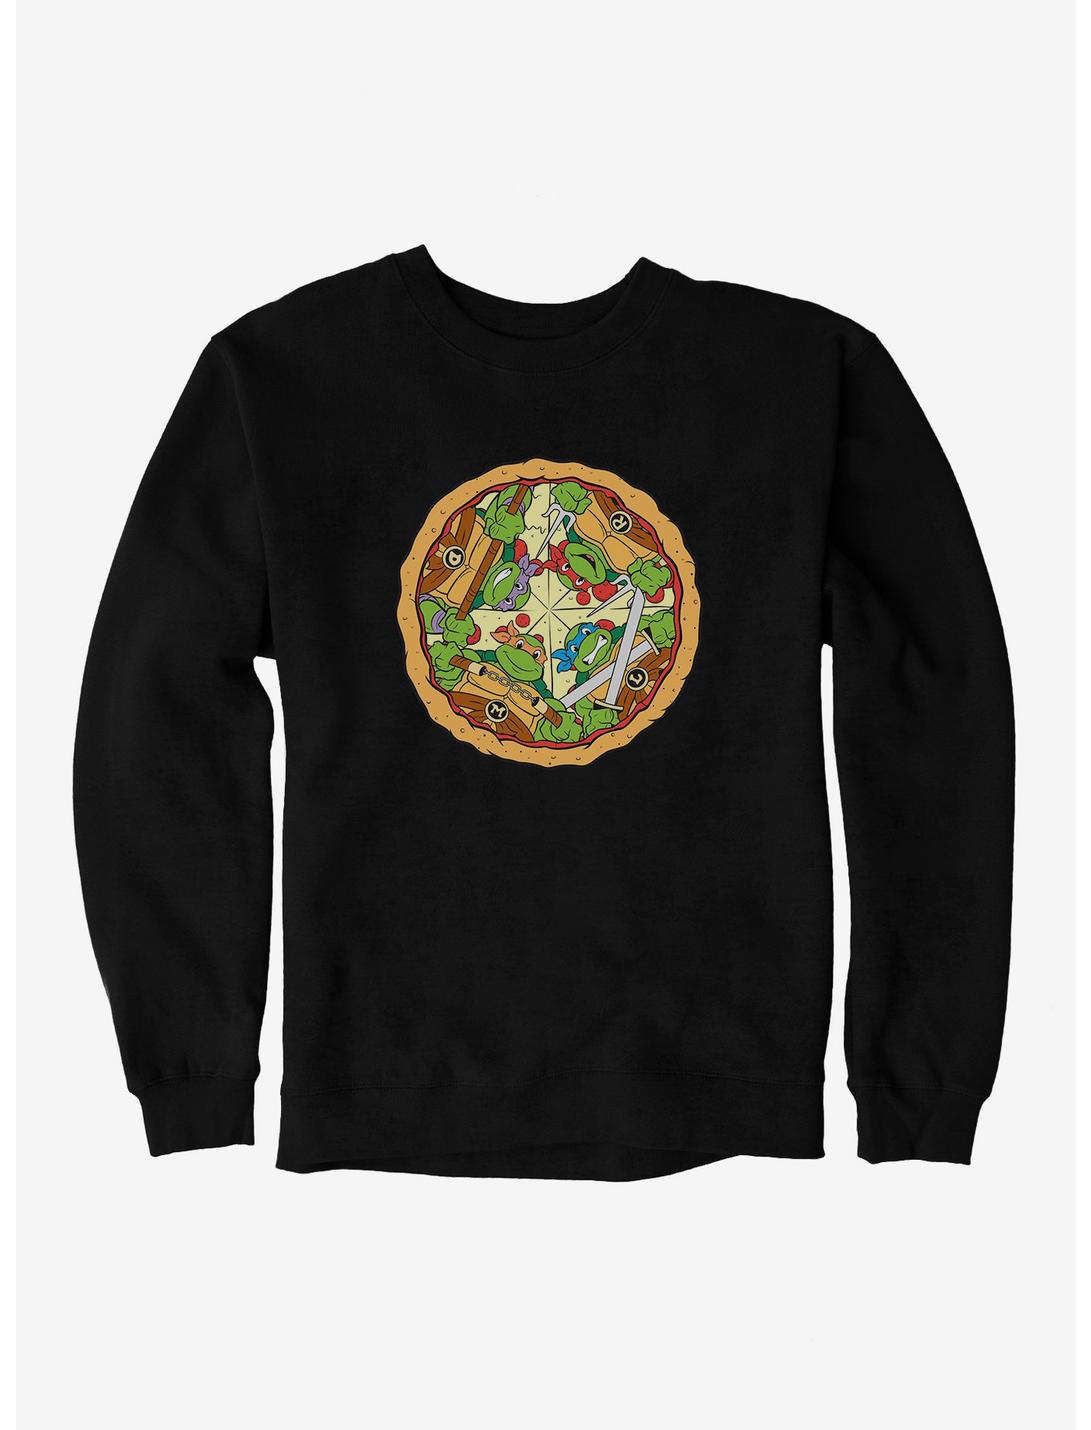 Teenage Mutant Ninja Turtles Group On Pizza Slices Sweatshirt, BLACK, hi-res